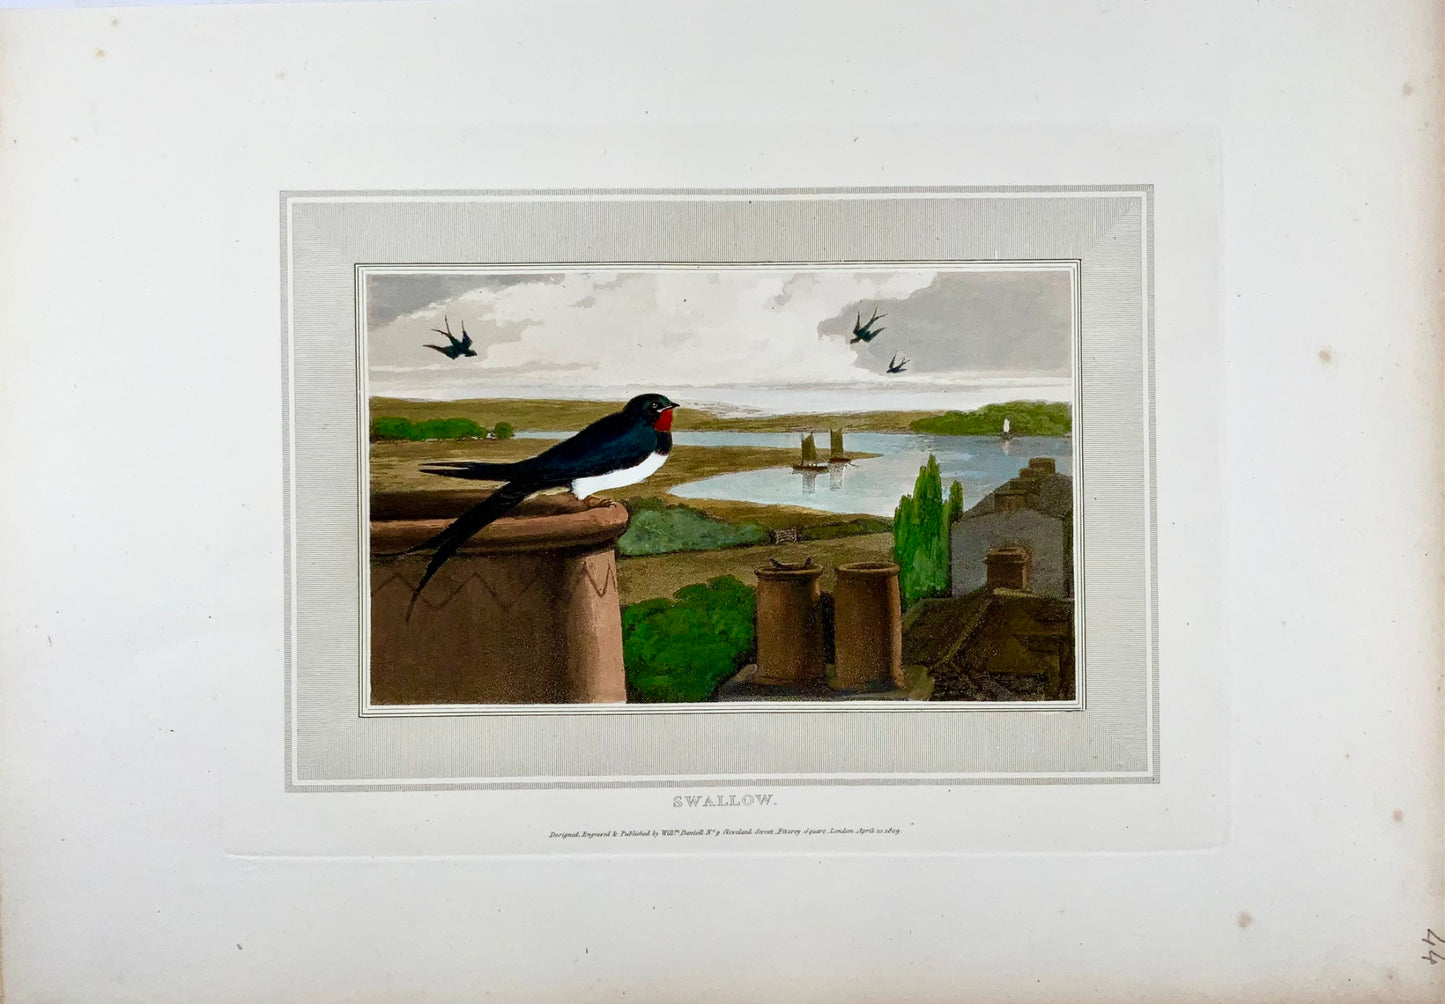 1807 William Daniell, Rondine, ornitologia, acquatinta colorata a mano